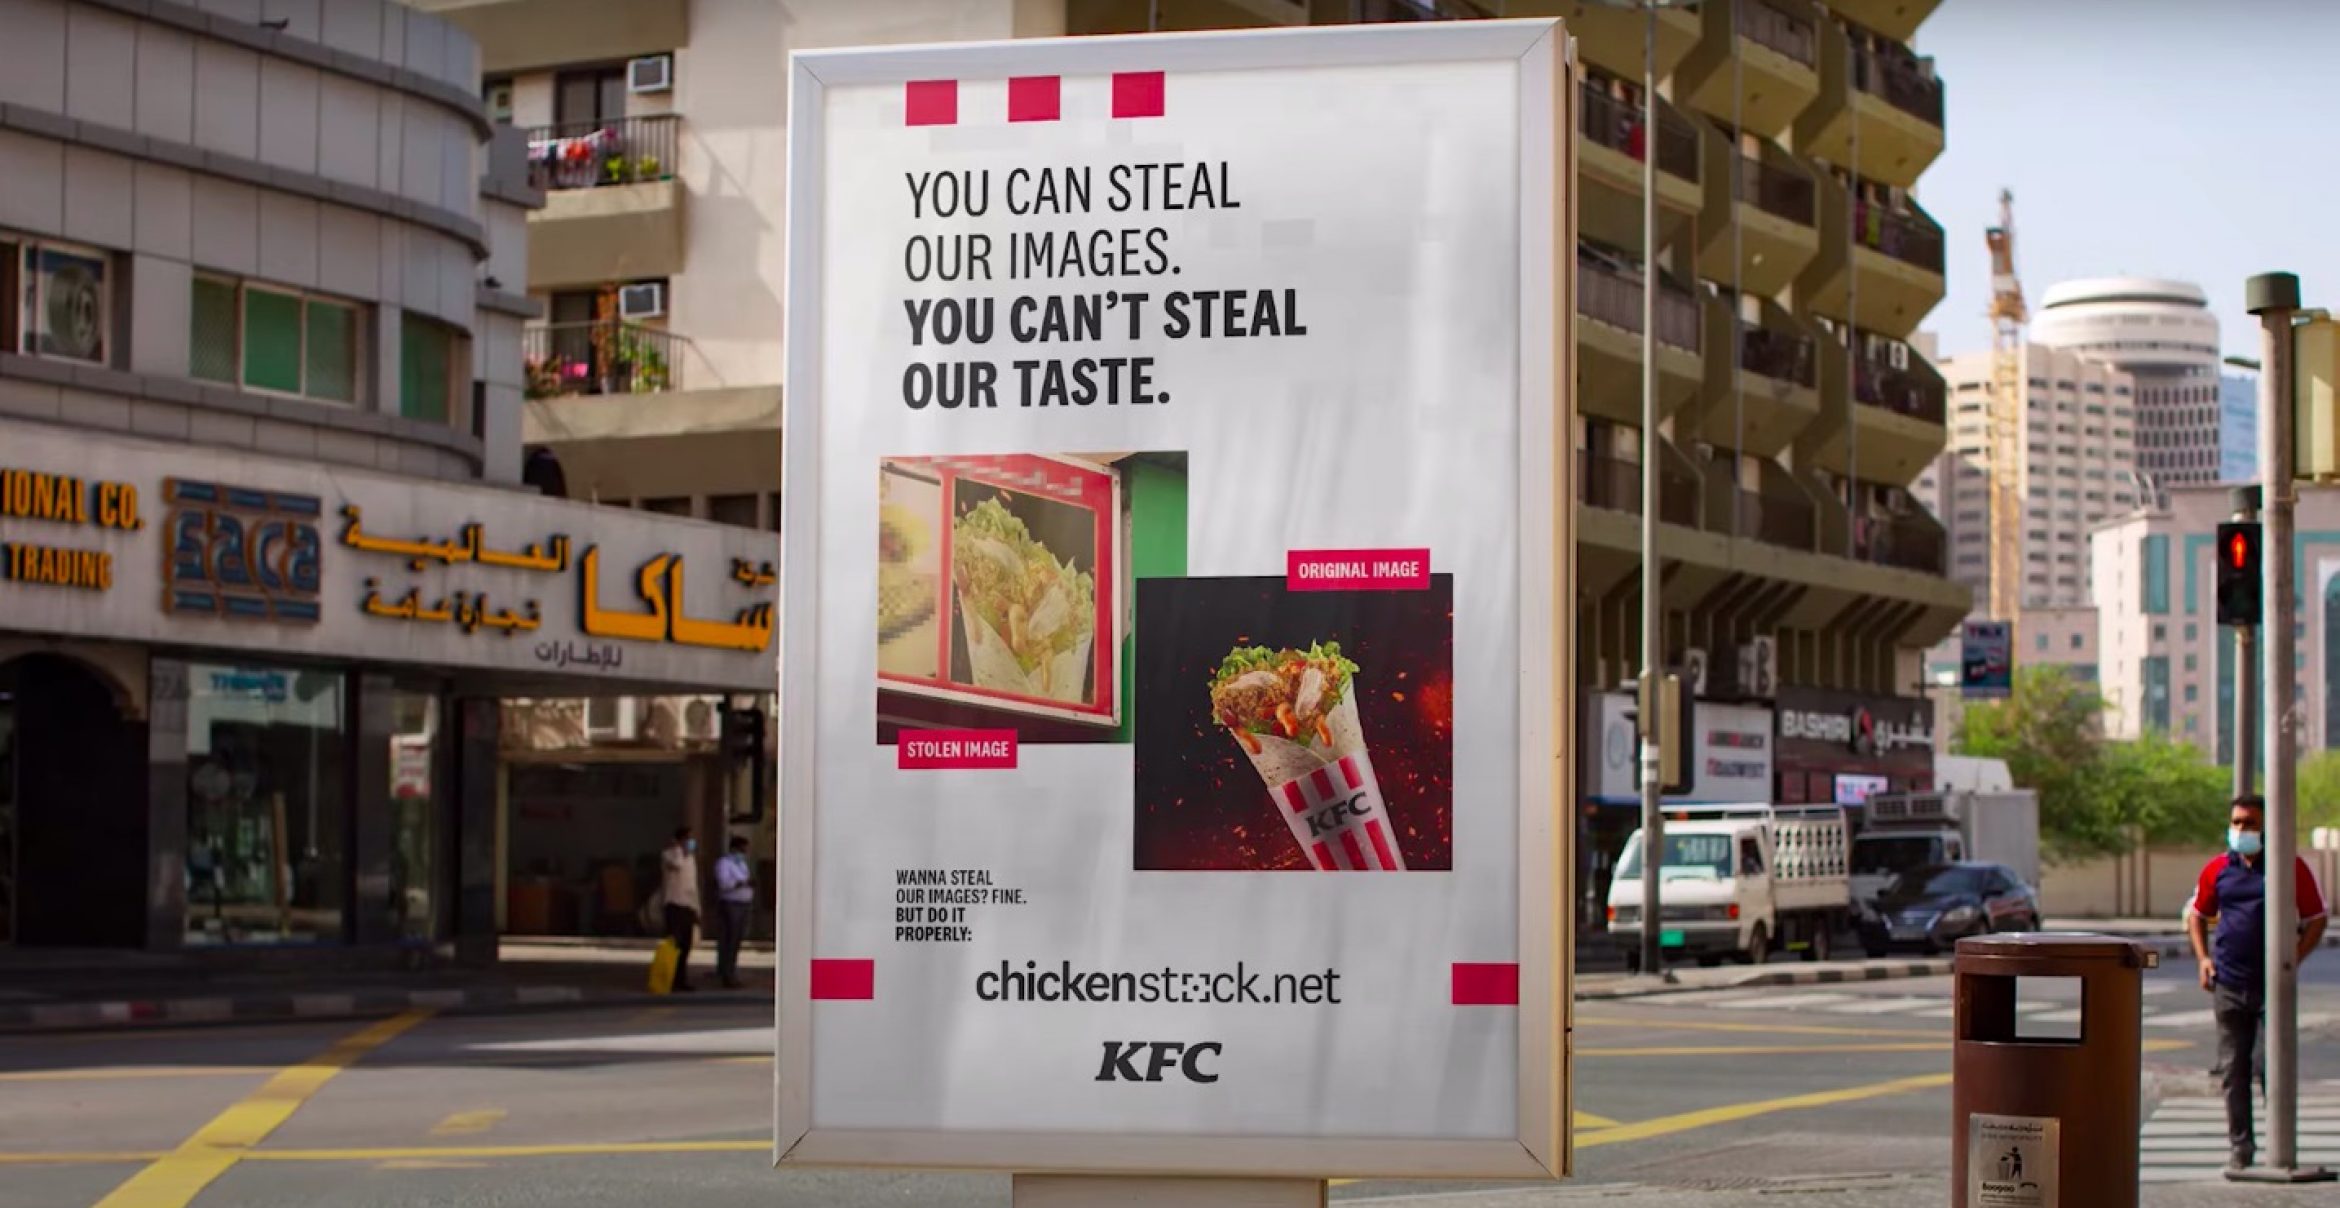 KFC hilft Copycats und stellt Produktbilder zur freien Verfügung